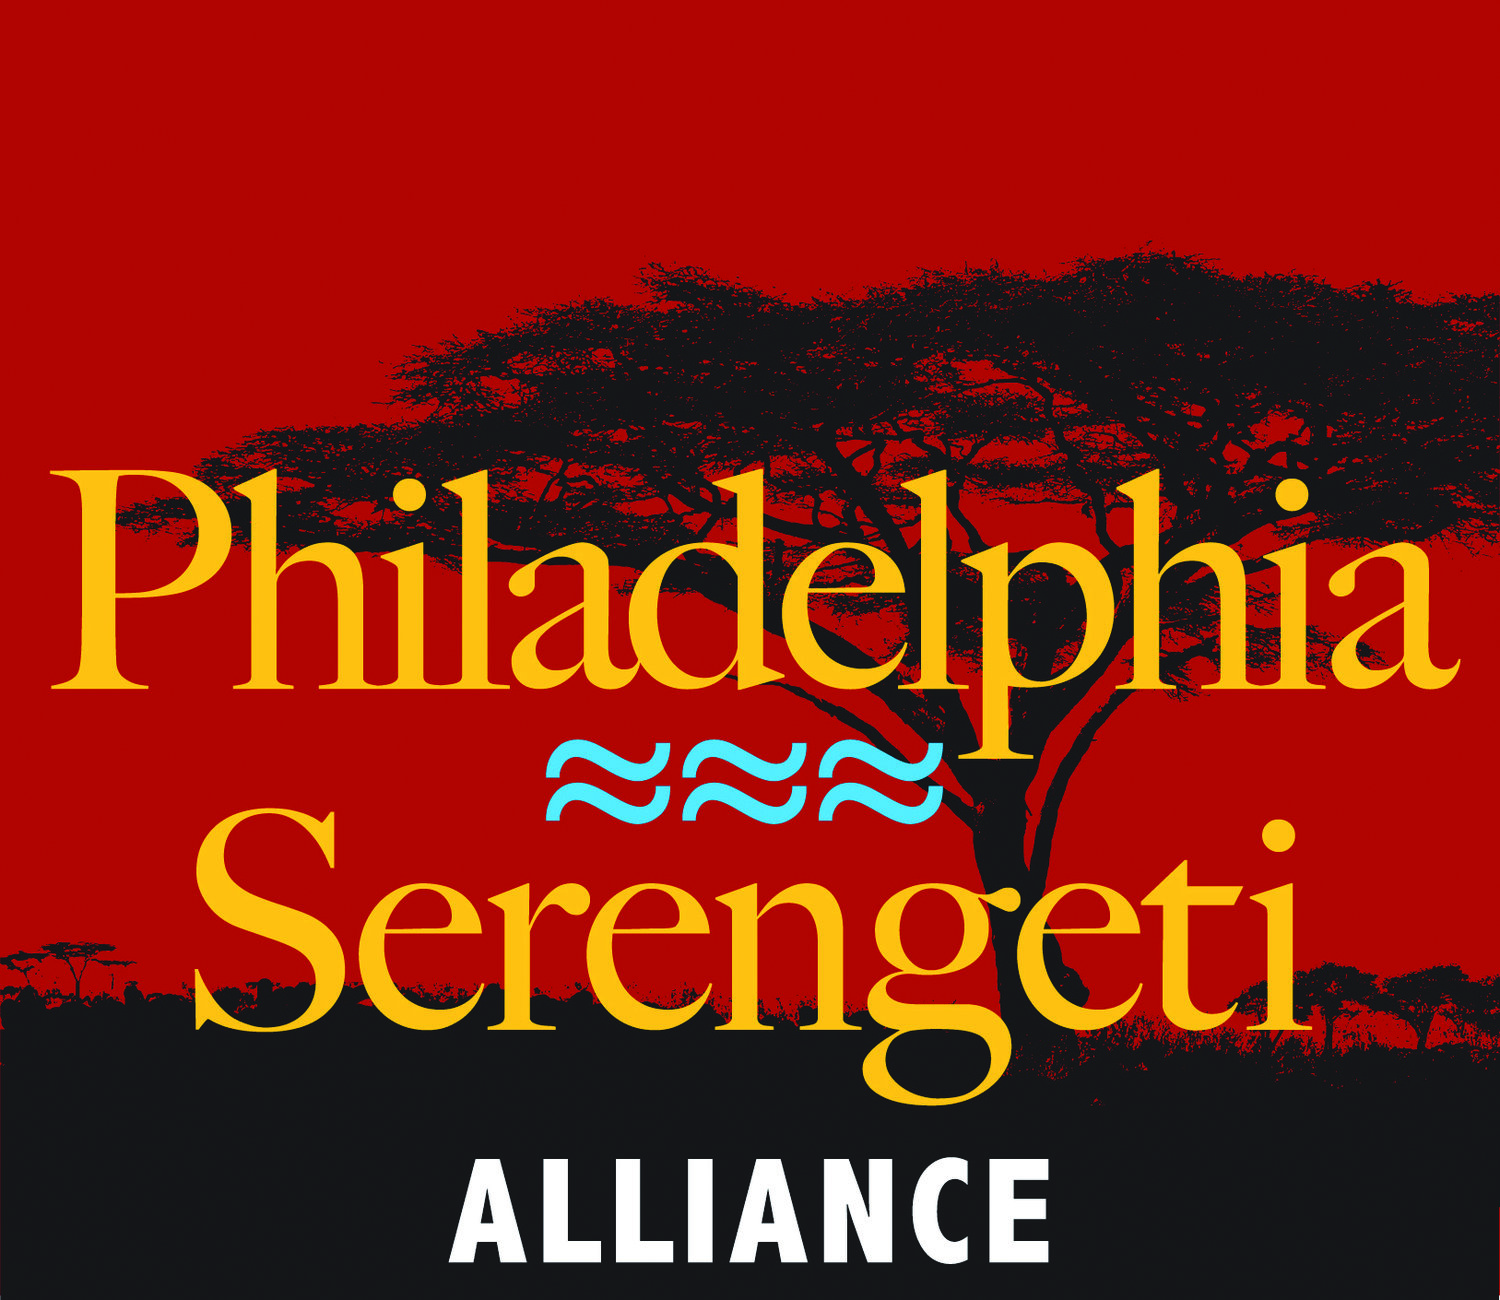 Philadelphia-Serengeti Alliance